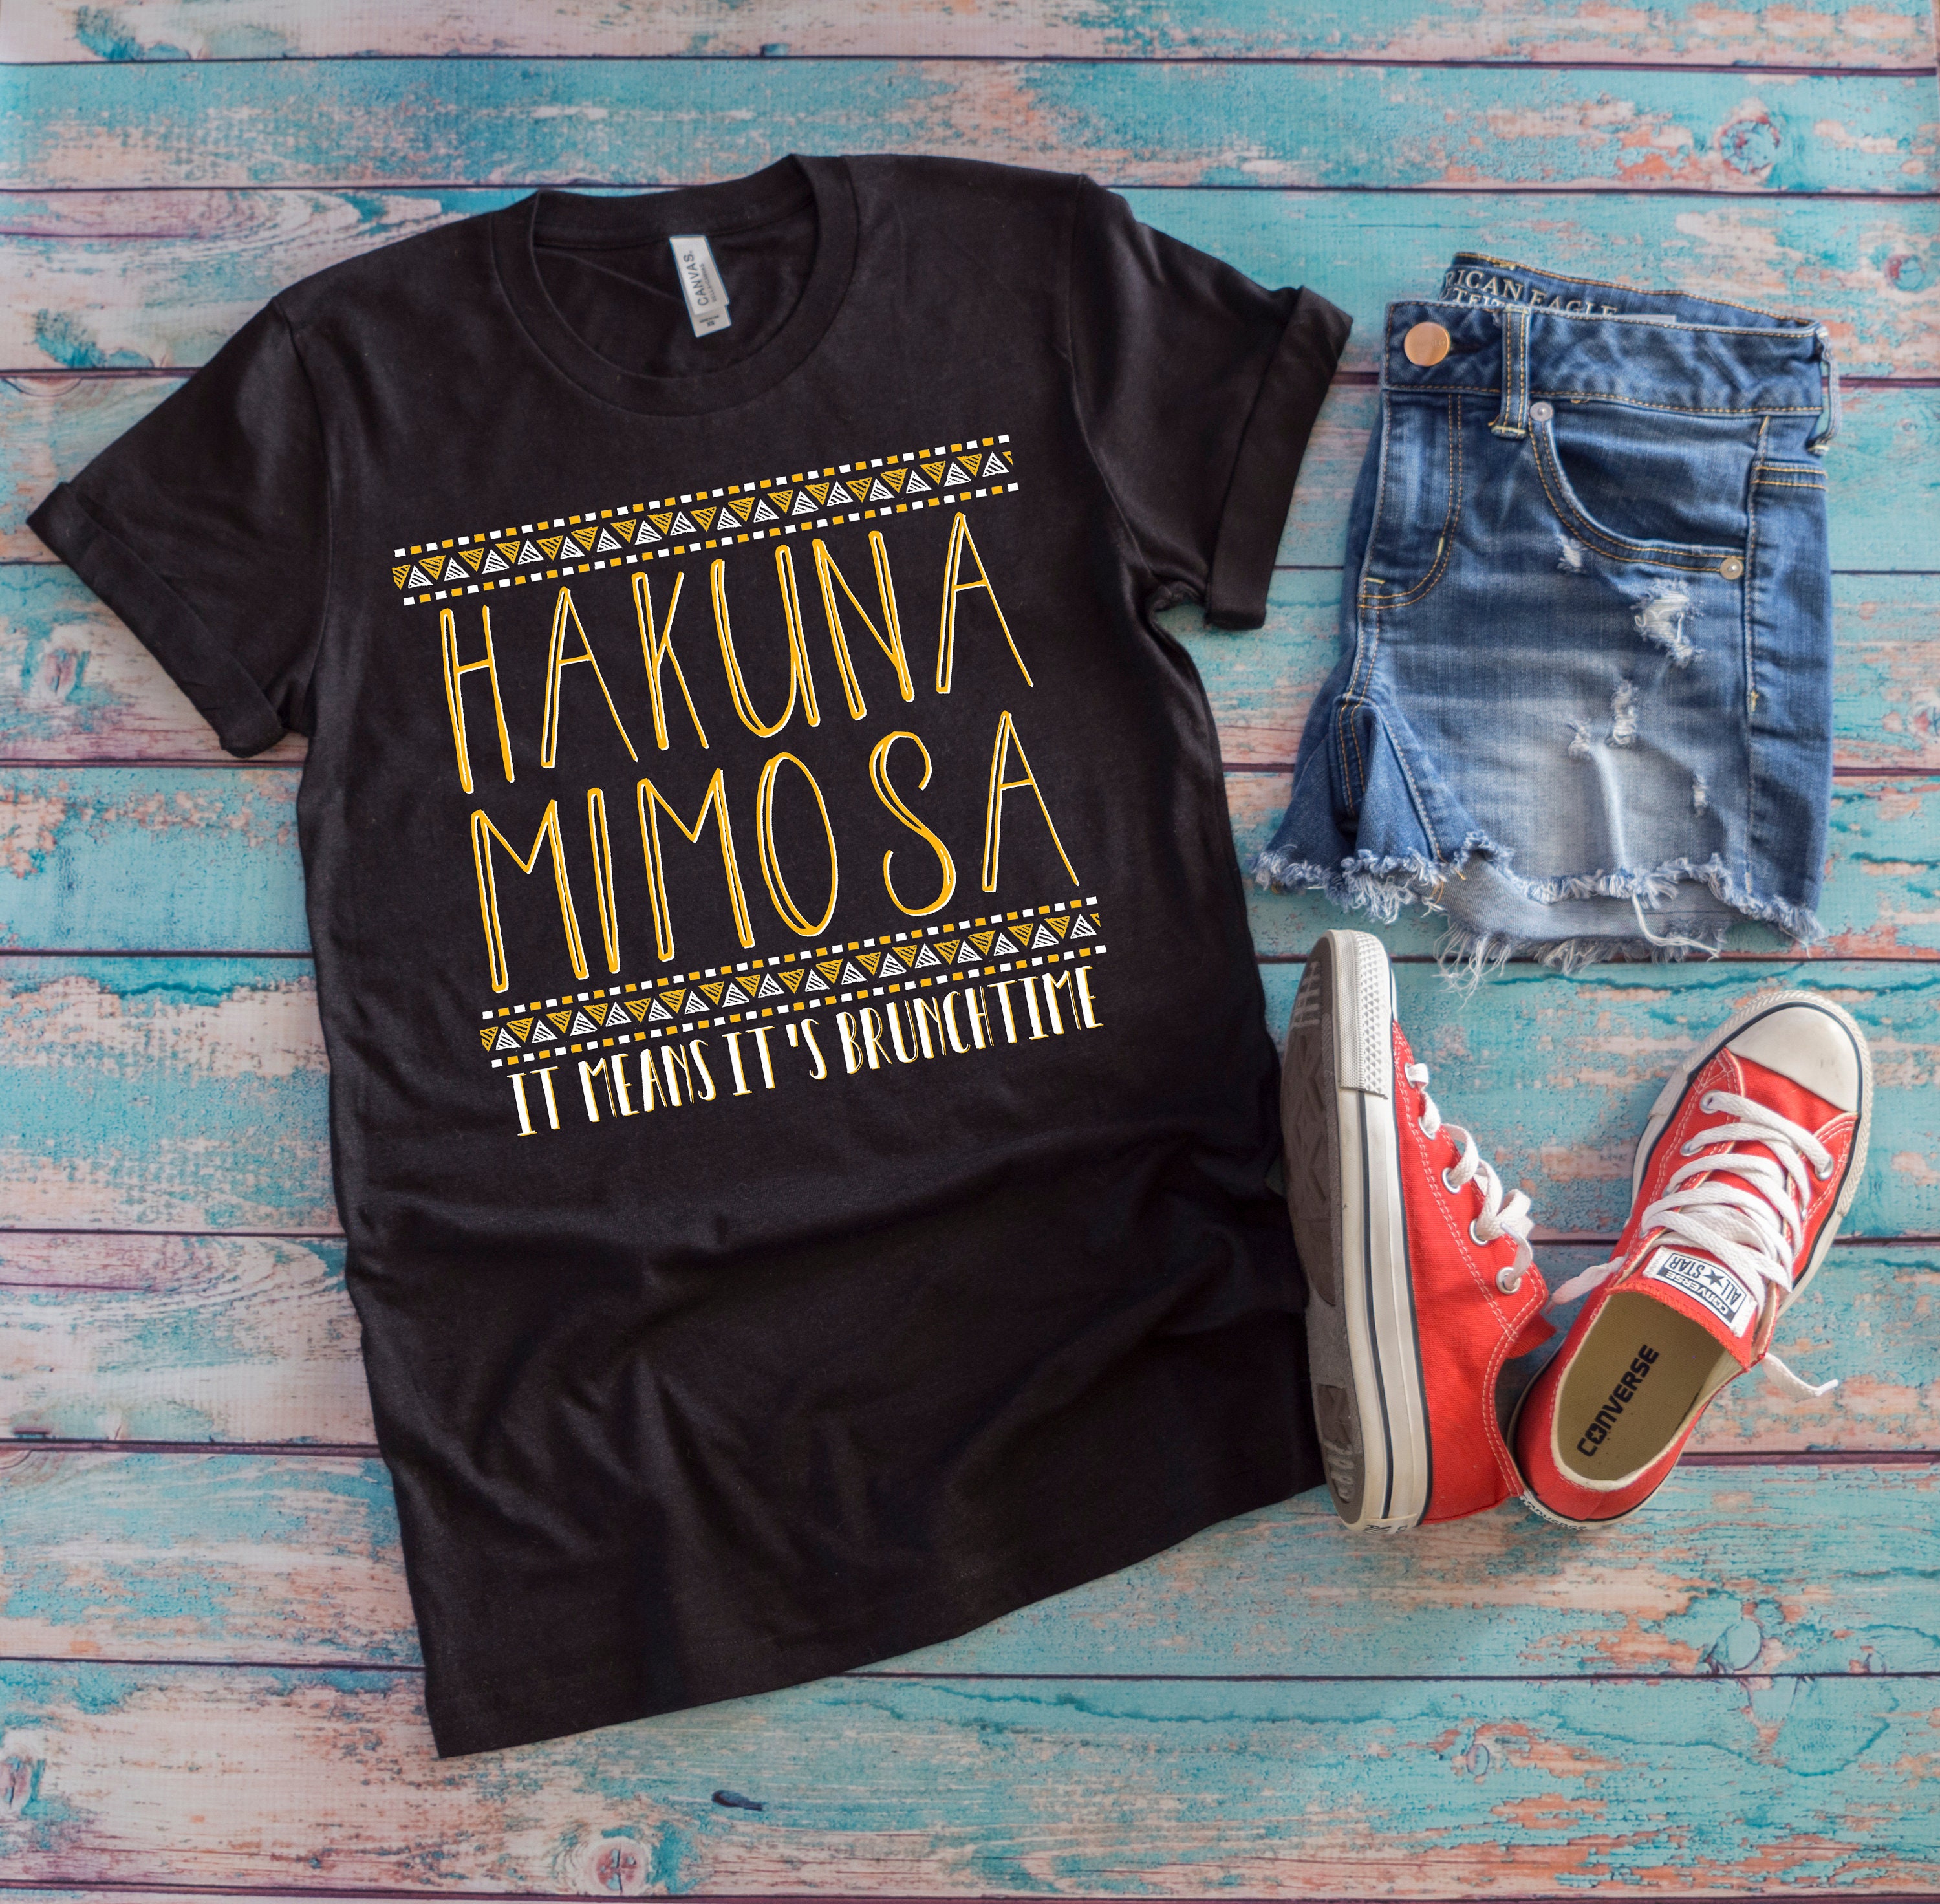 Hakuna Mimosa Shirt Disney Shirt Brunch Shirt Mimosas - Etsy Israel